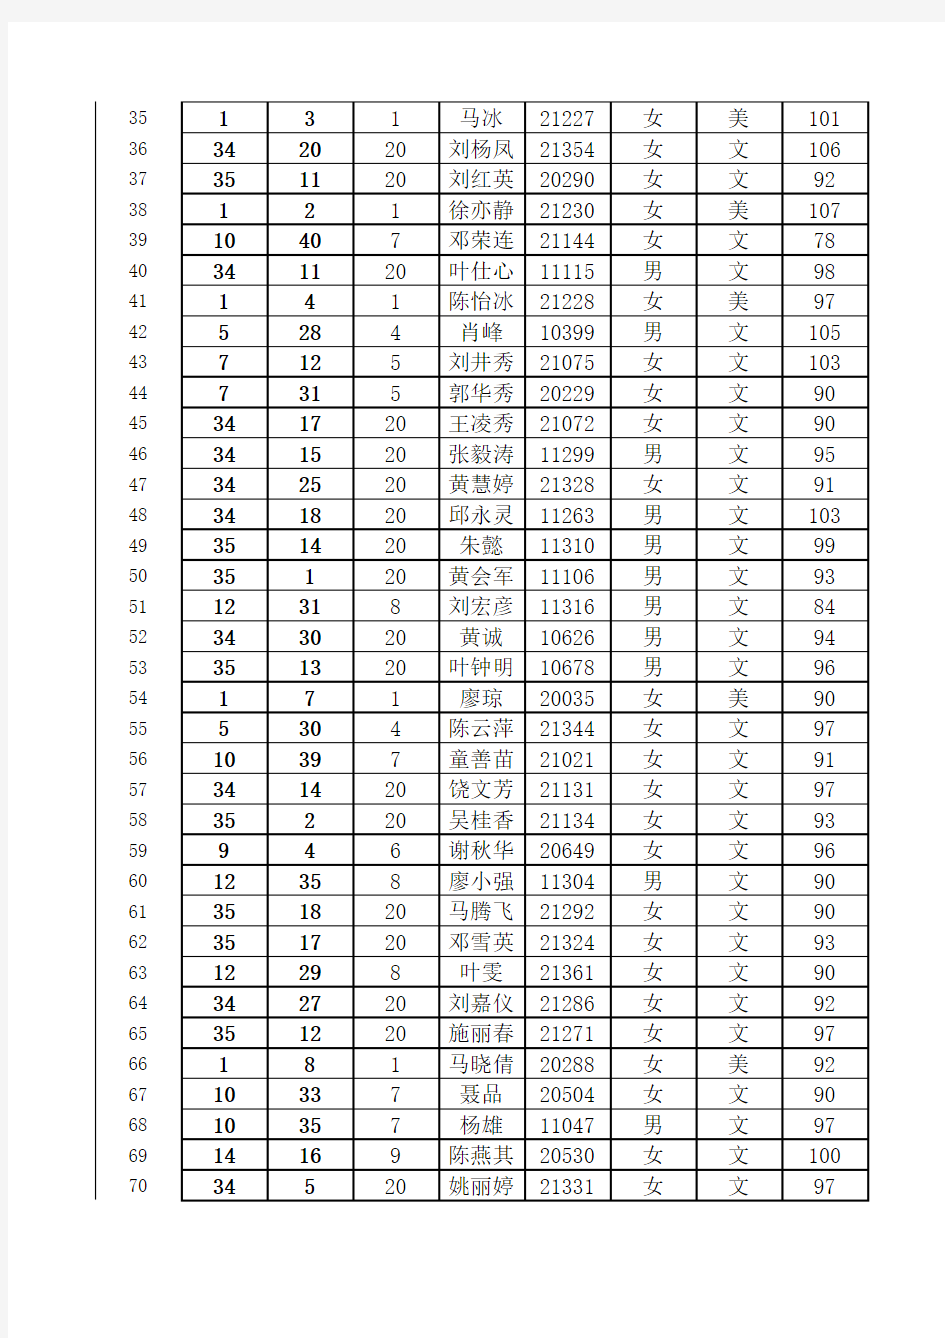 高二文科2012~2013年期末考成绩全级排名